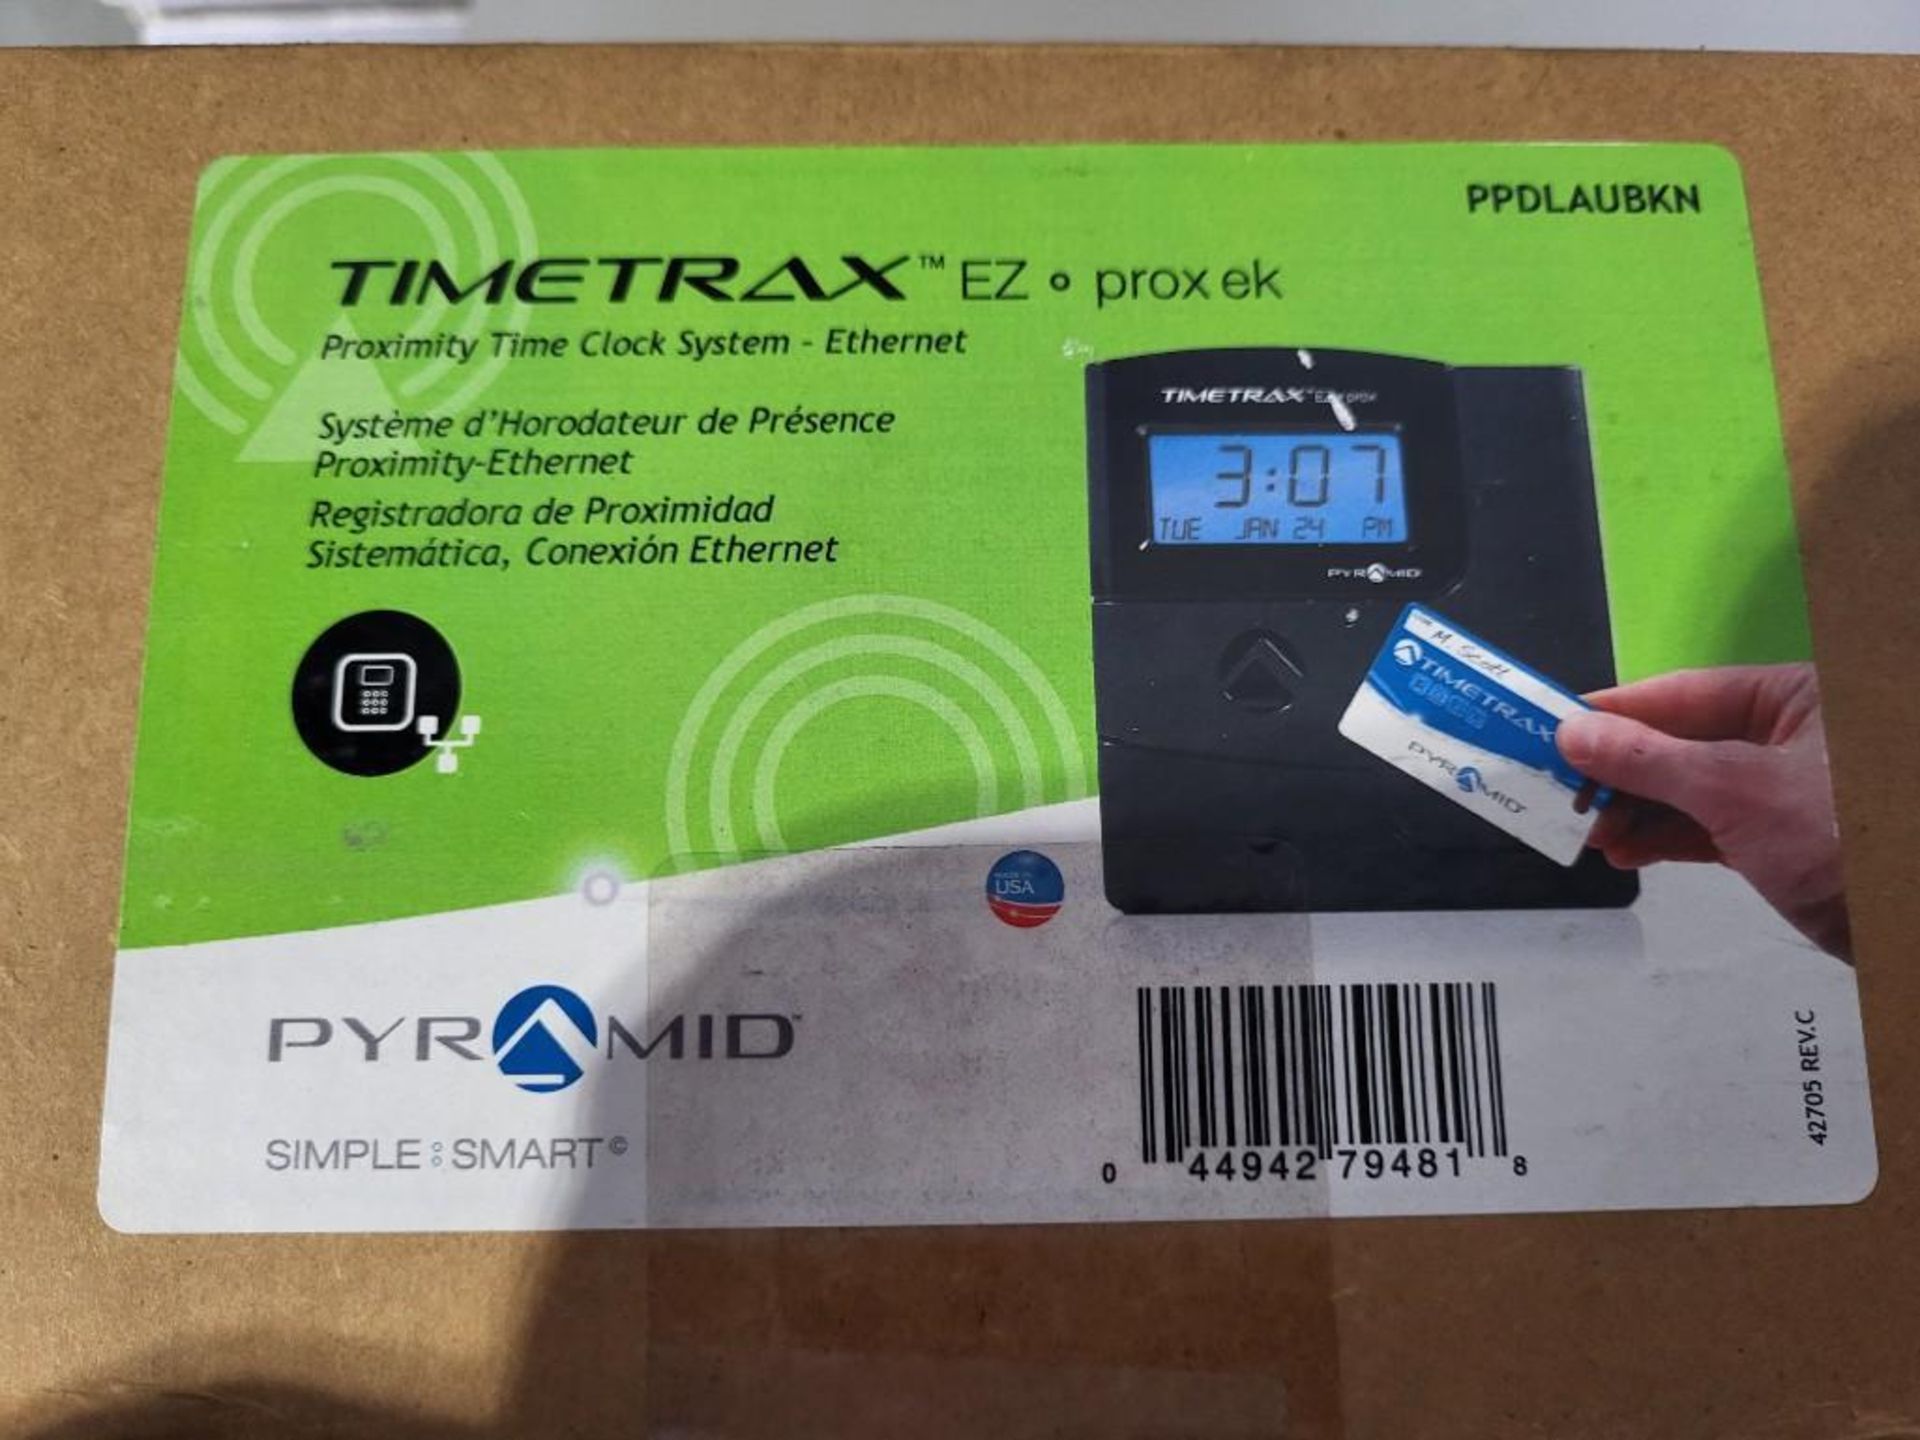 New In Box Pyramid TimeTrax Proximity Time Clock System M/N PPDLAUBKN